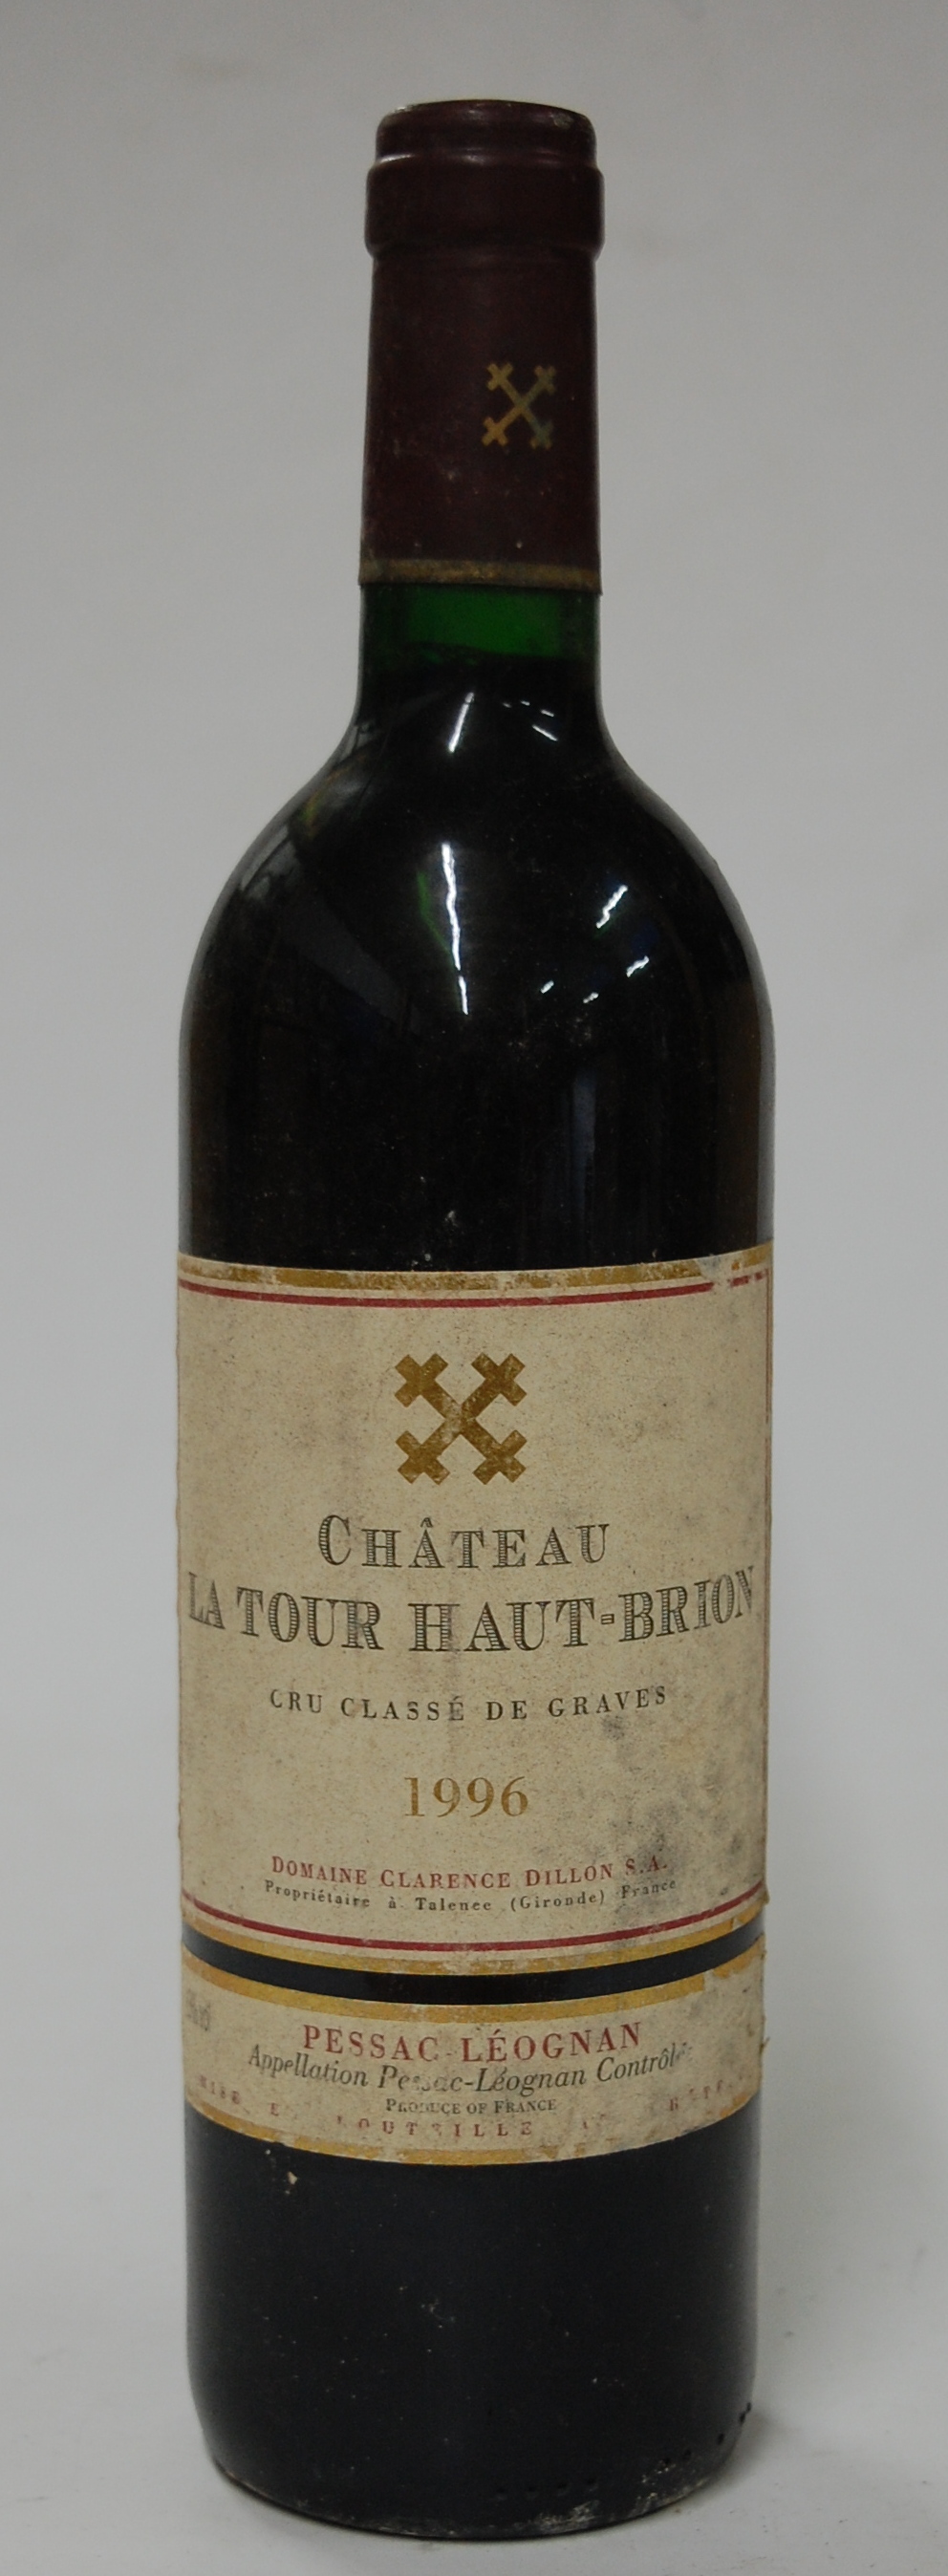 Château La Tour Haut-Brion, 1996, Pessac-Leognan, one bottle